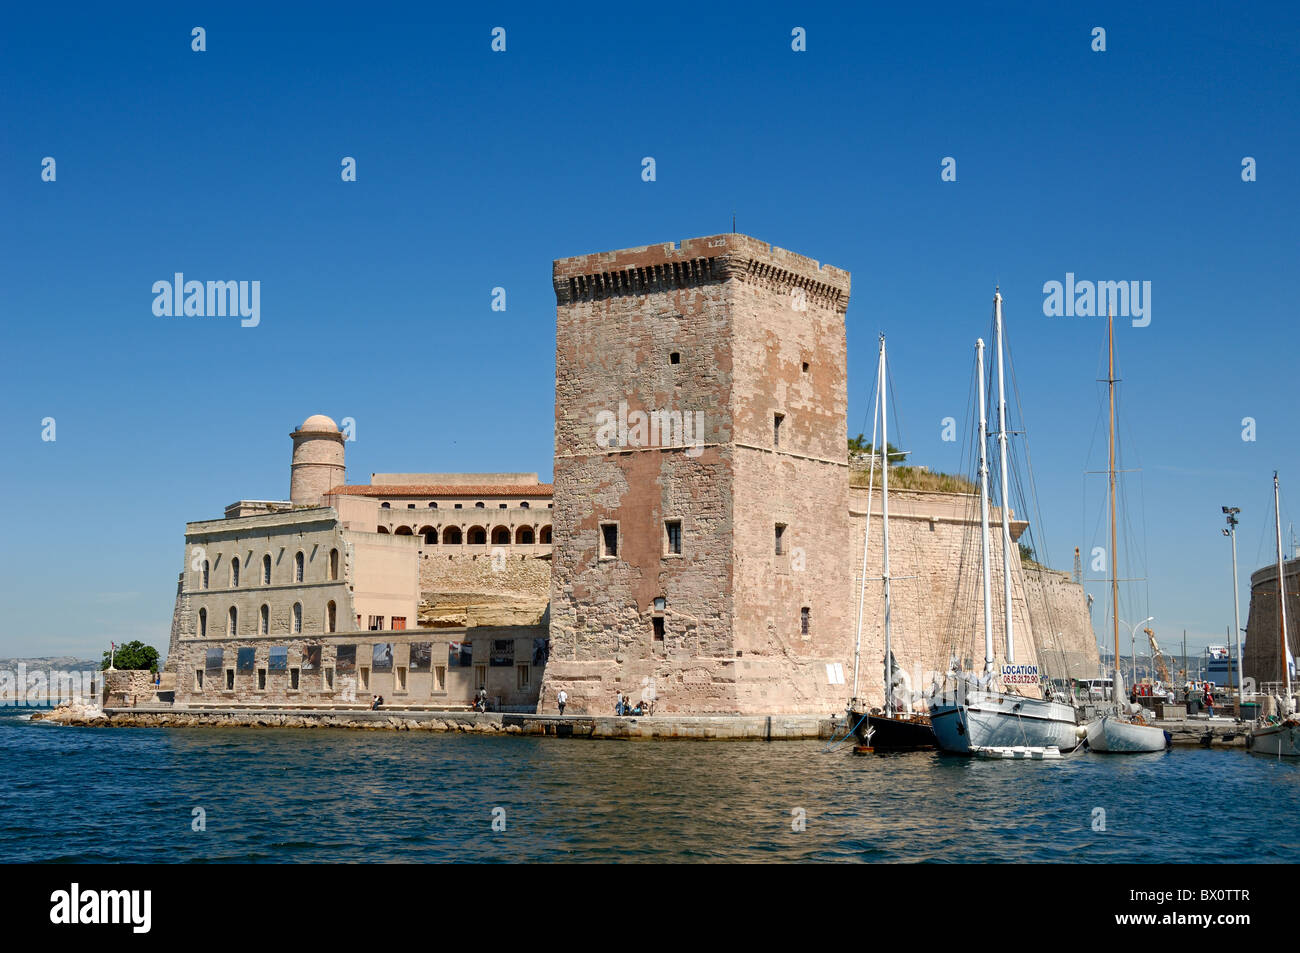 Torre de Defensa de Fort Saint-Jean (1660) en la entrada al puerto antiguo, puerto o puerto, Marsella o Marsella, Provenza, Francia Foto de stock